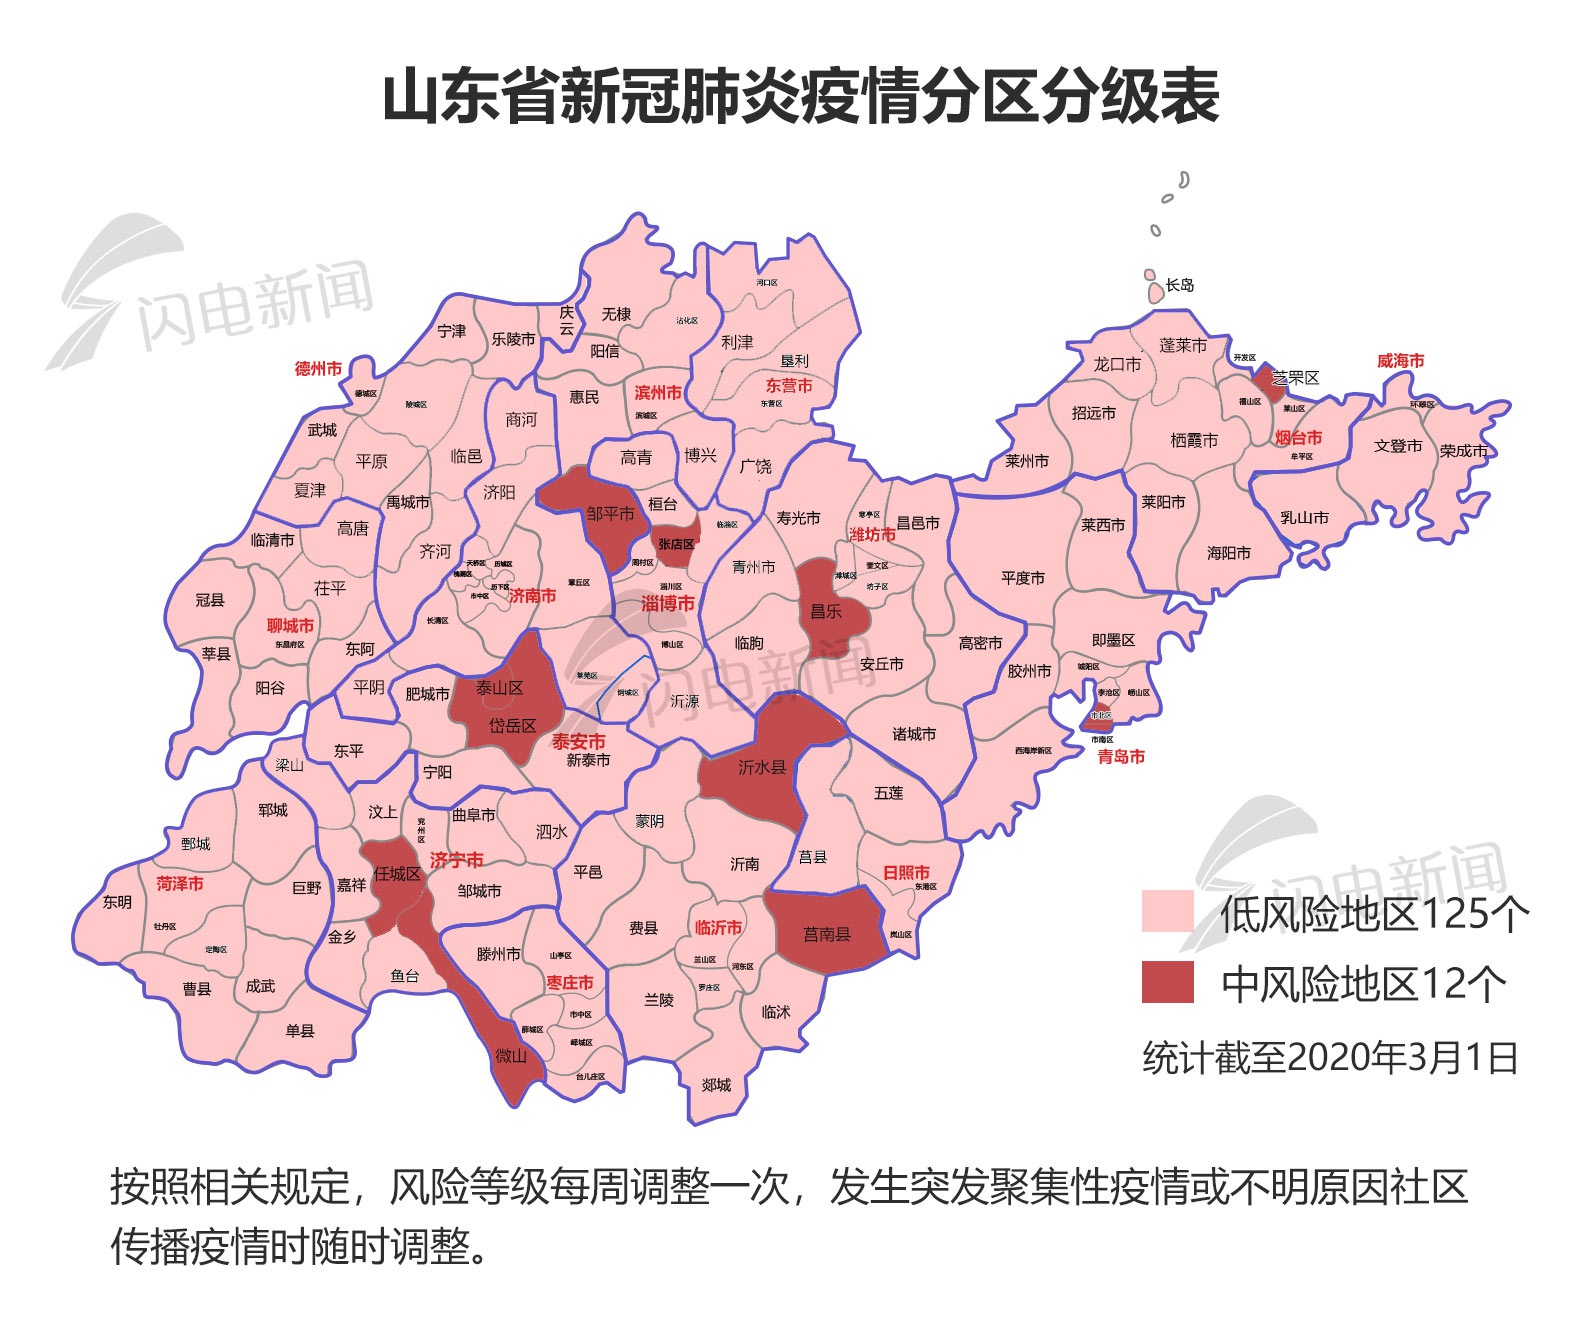 山东省疫情地图发布图片